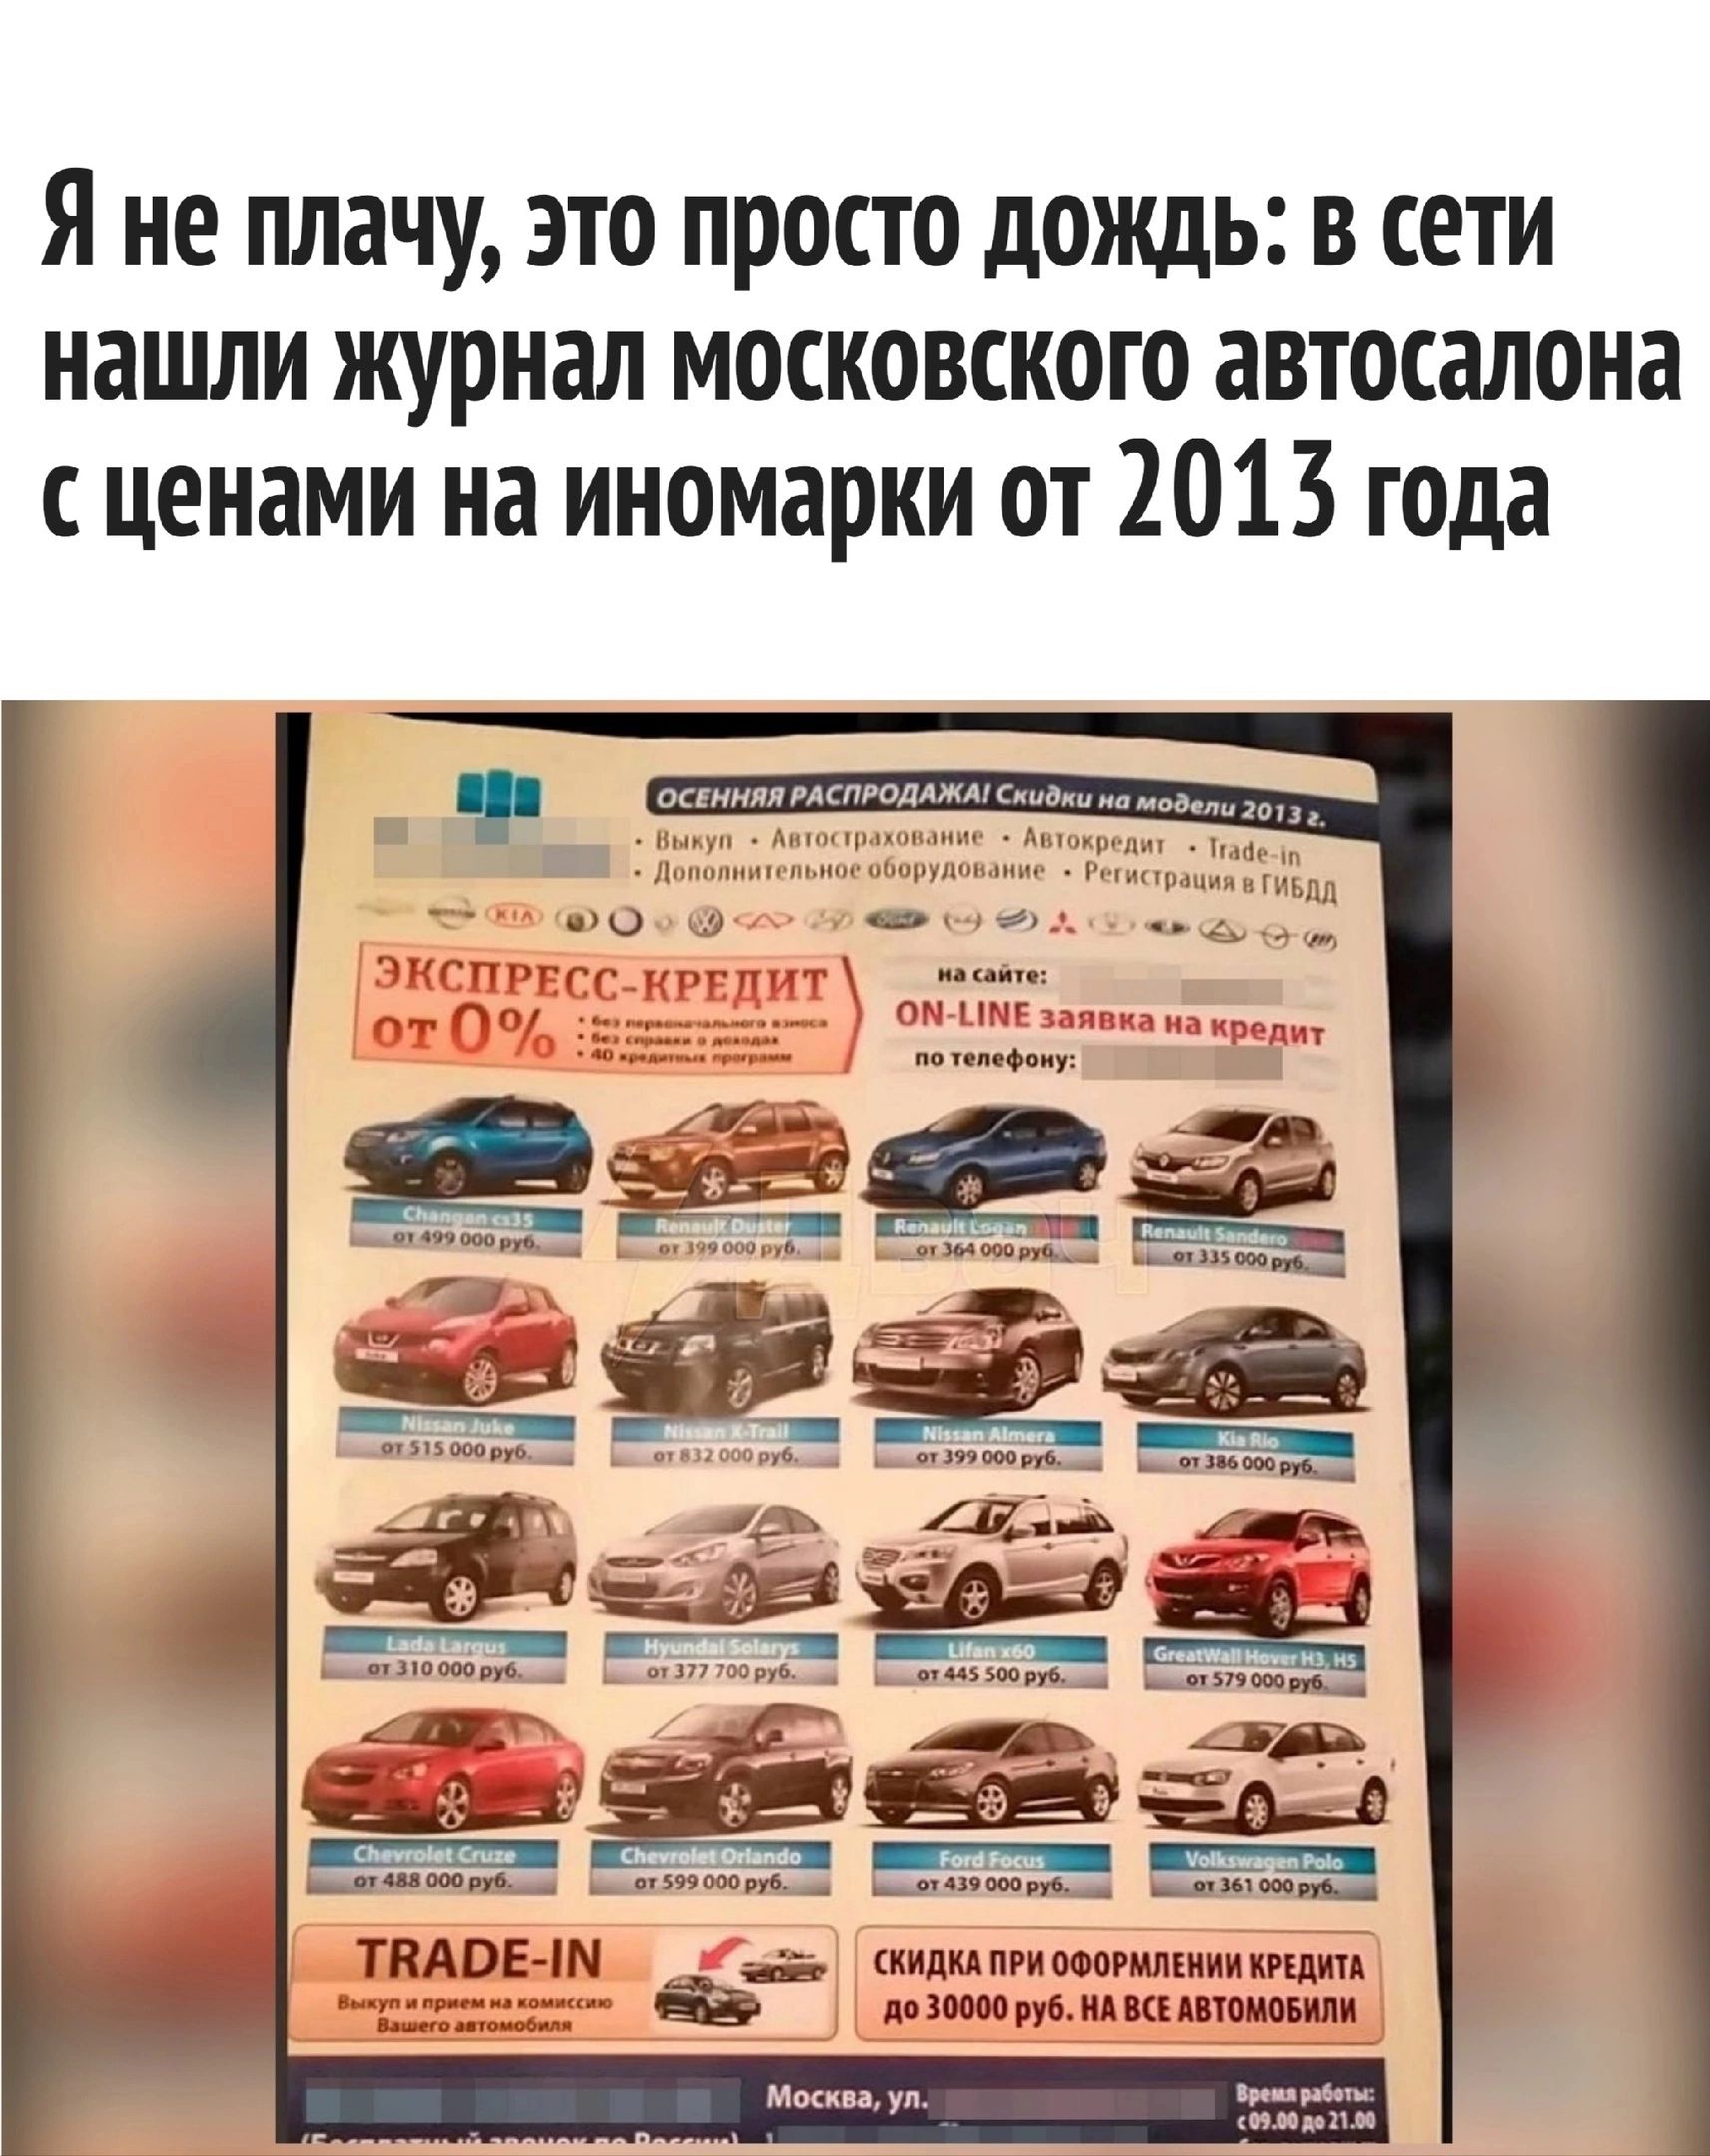 Я не плачу это просто дождь в сети нашли журнал московского автосалона ценами на иномарки от 2013 года ппппрмшиищи ми шим